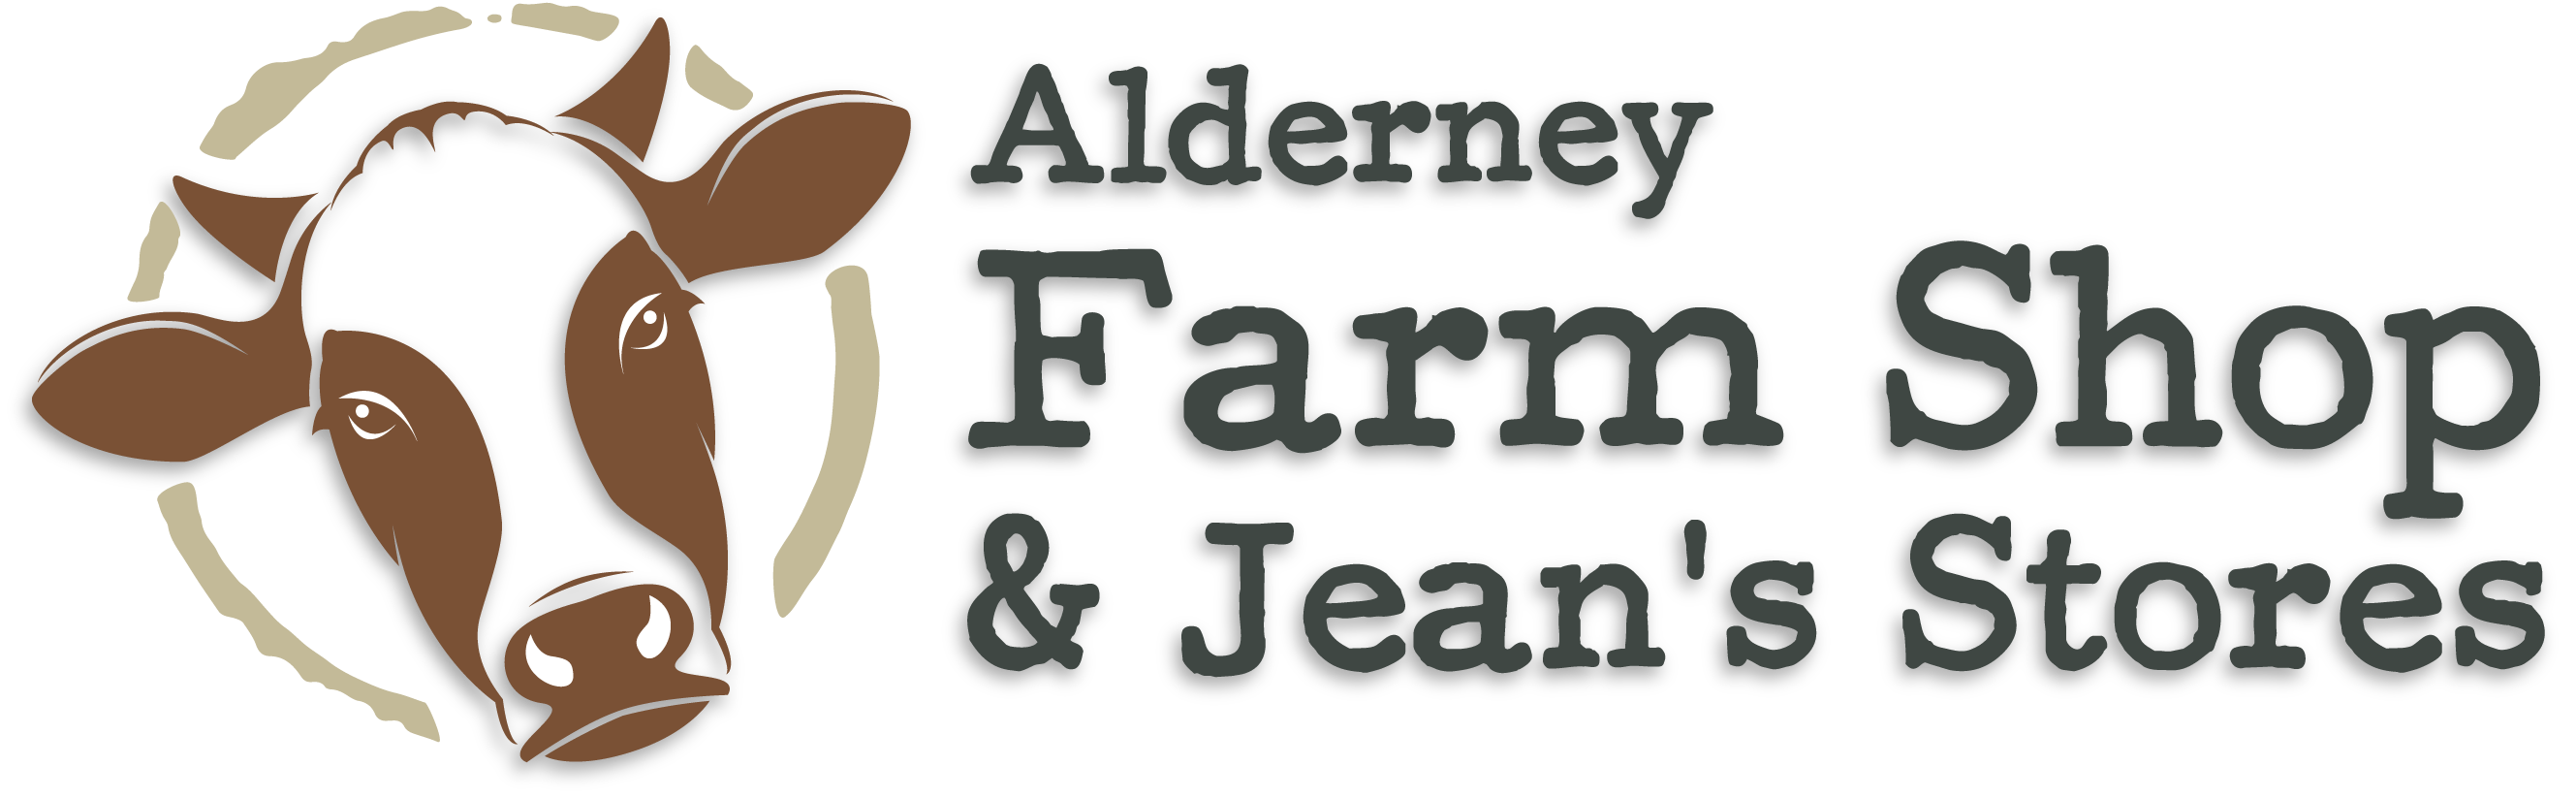 Alderney Farm Shop